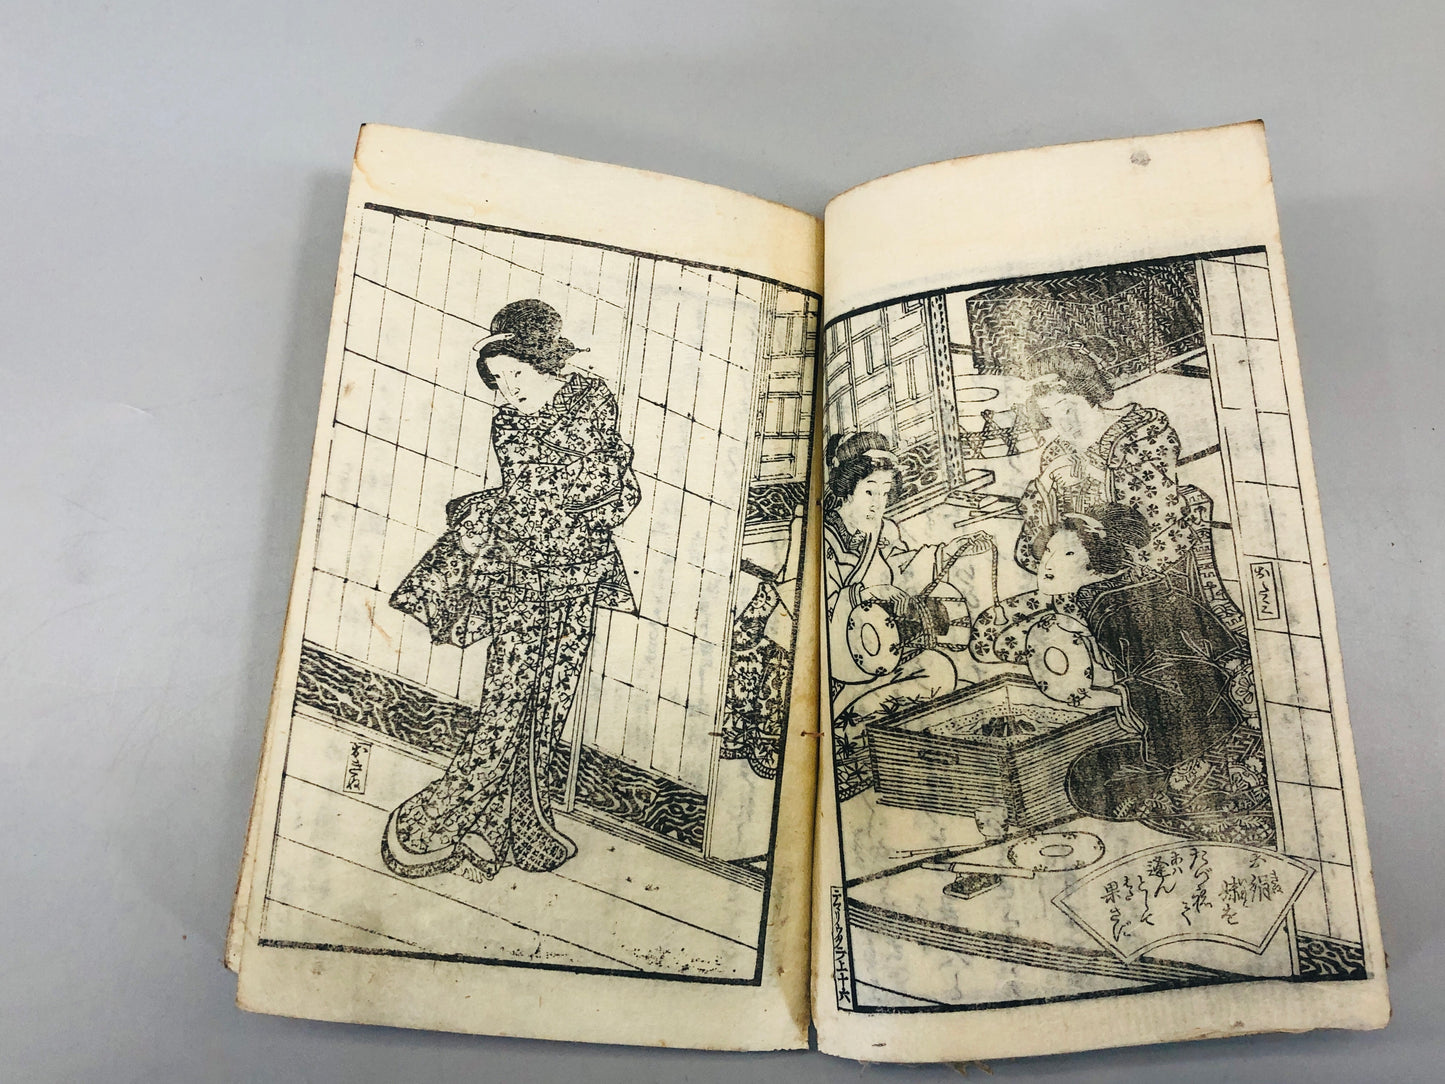 Y5464 WOODBLOCK PRINT Japanese style book 3 girls ghost Japan Ukiyoe antique art